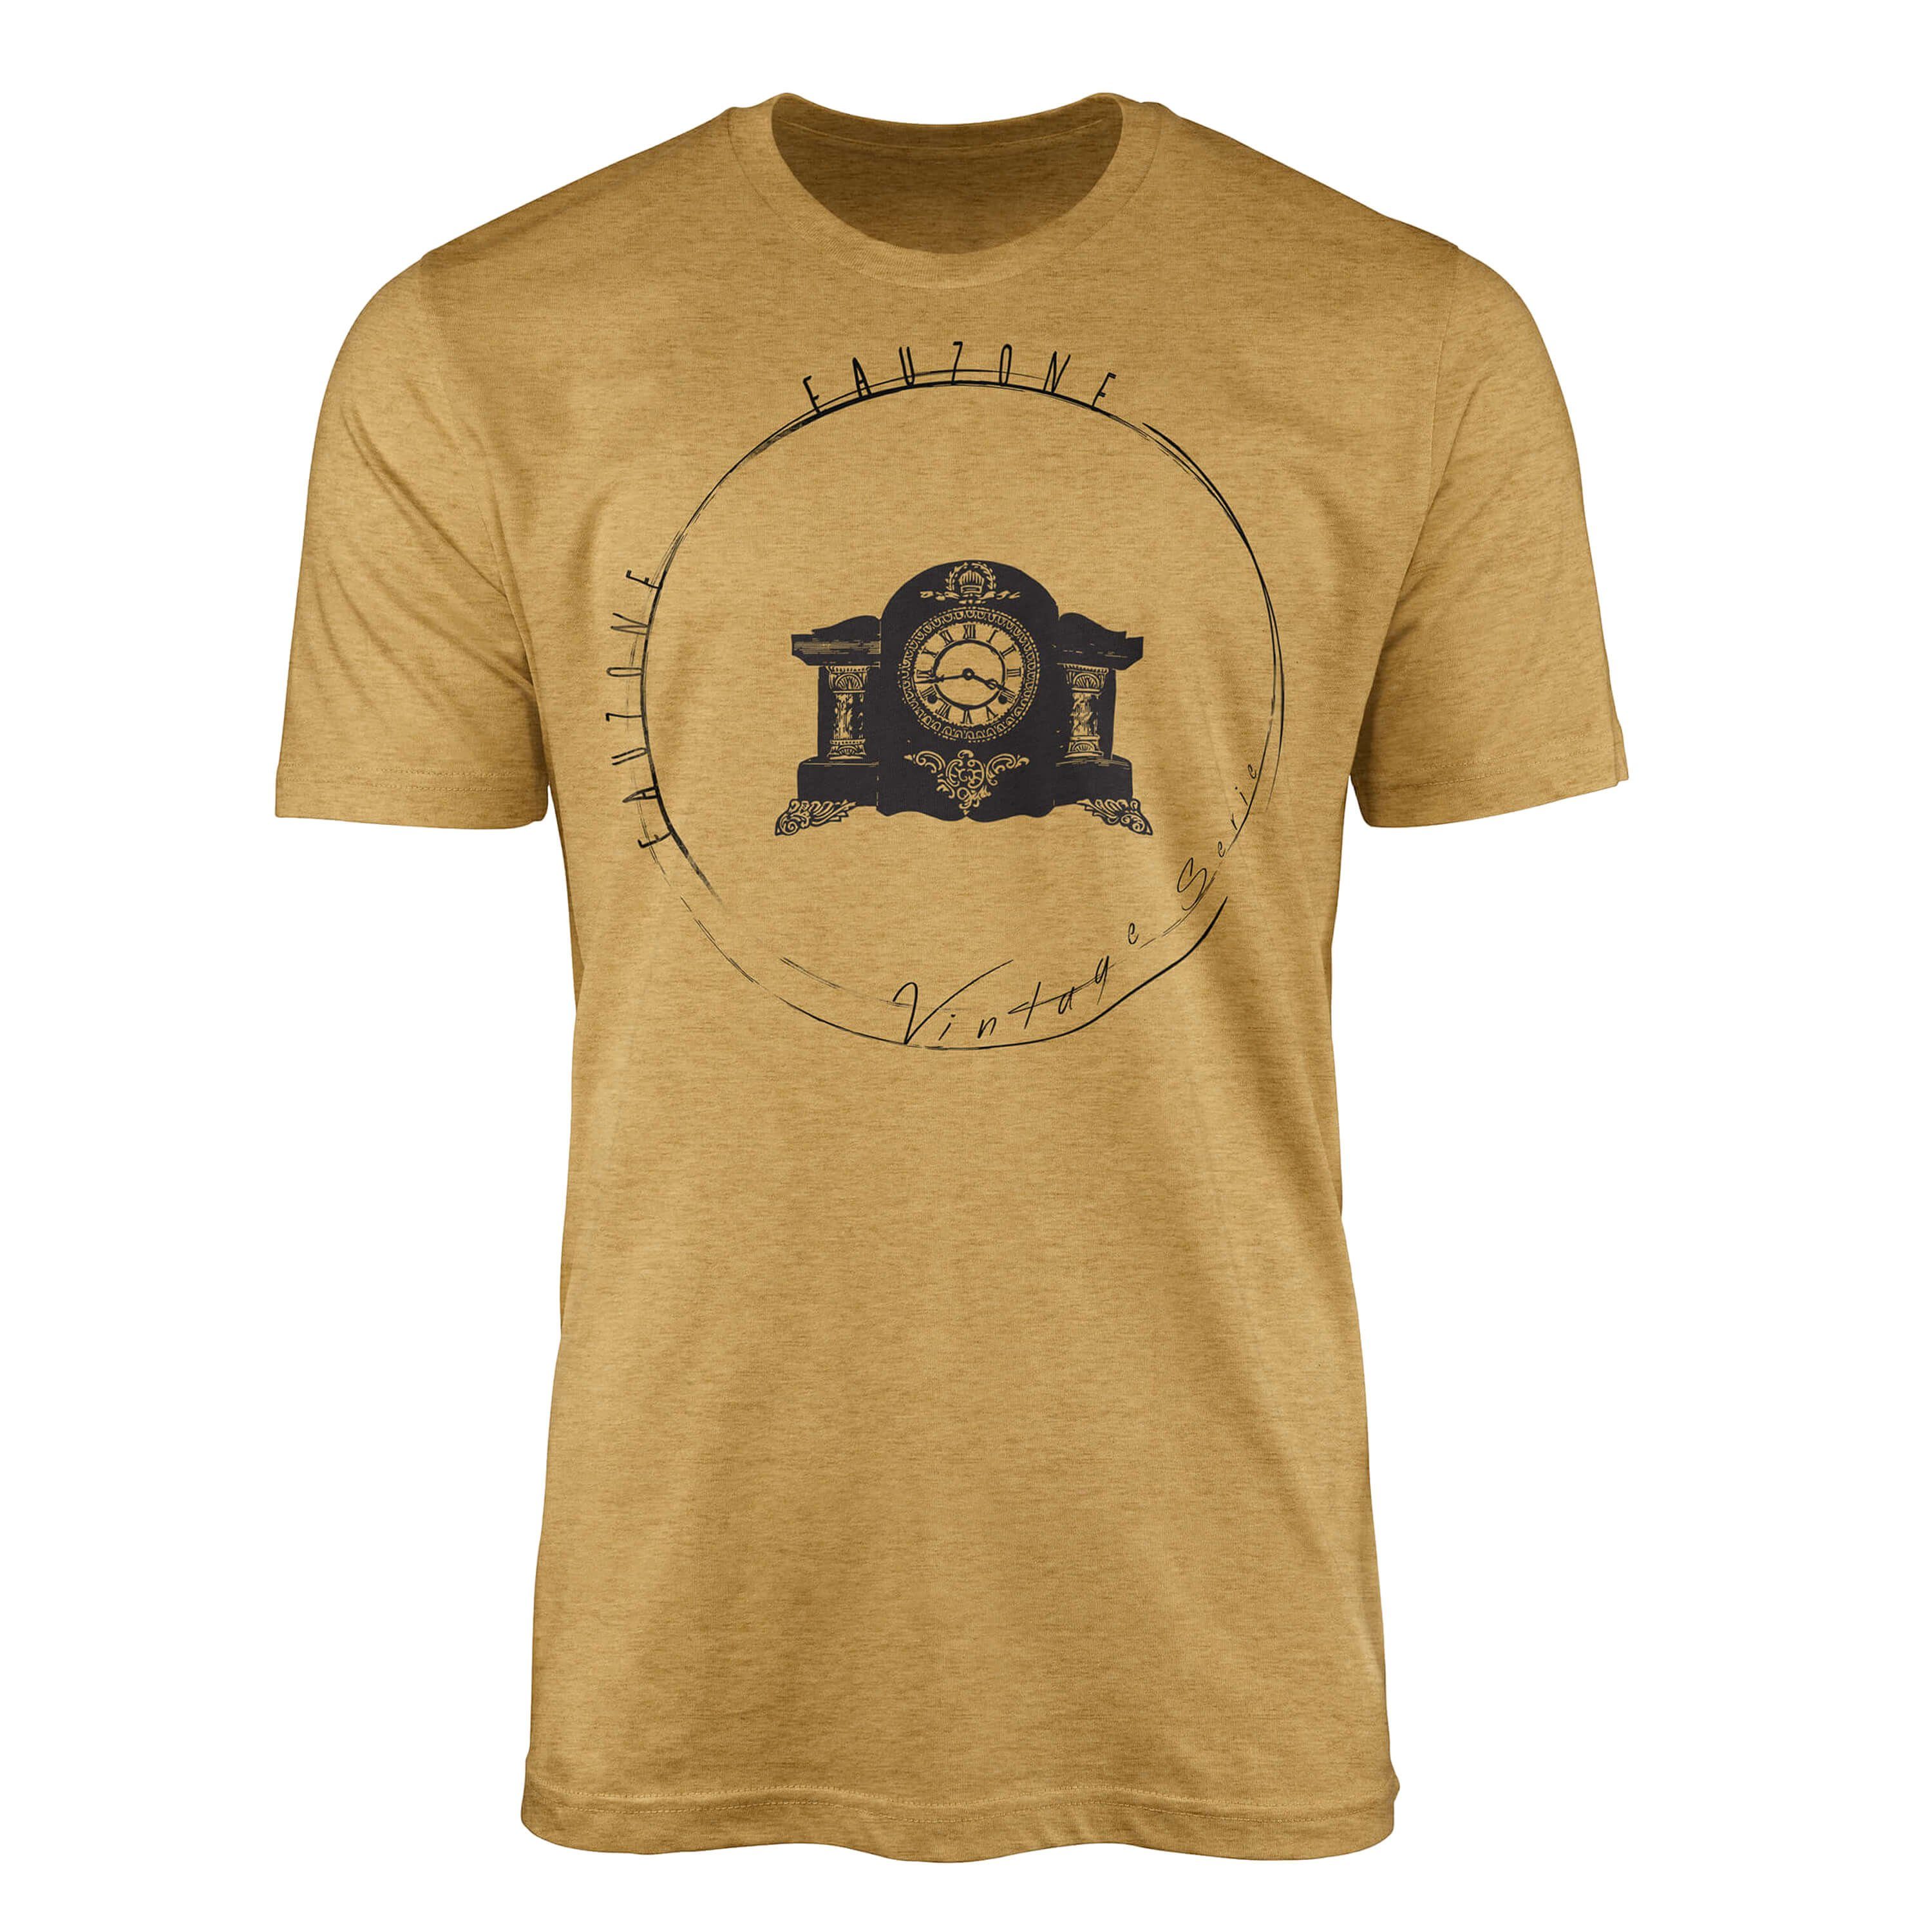 Sinus Art T-Shirt Vintage Herren T-Shirt Kaminuhr Antique Gold